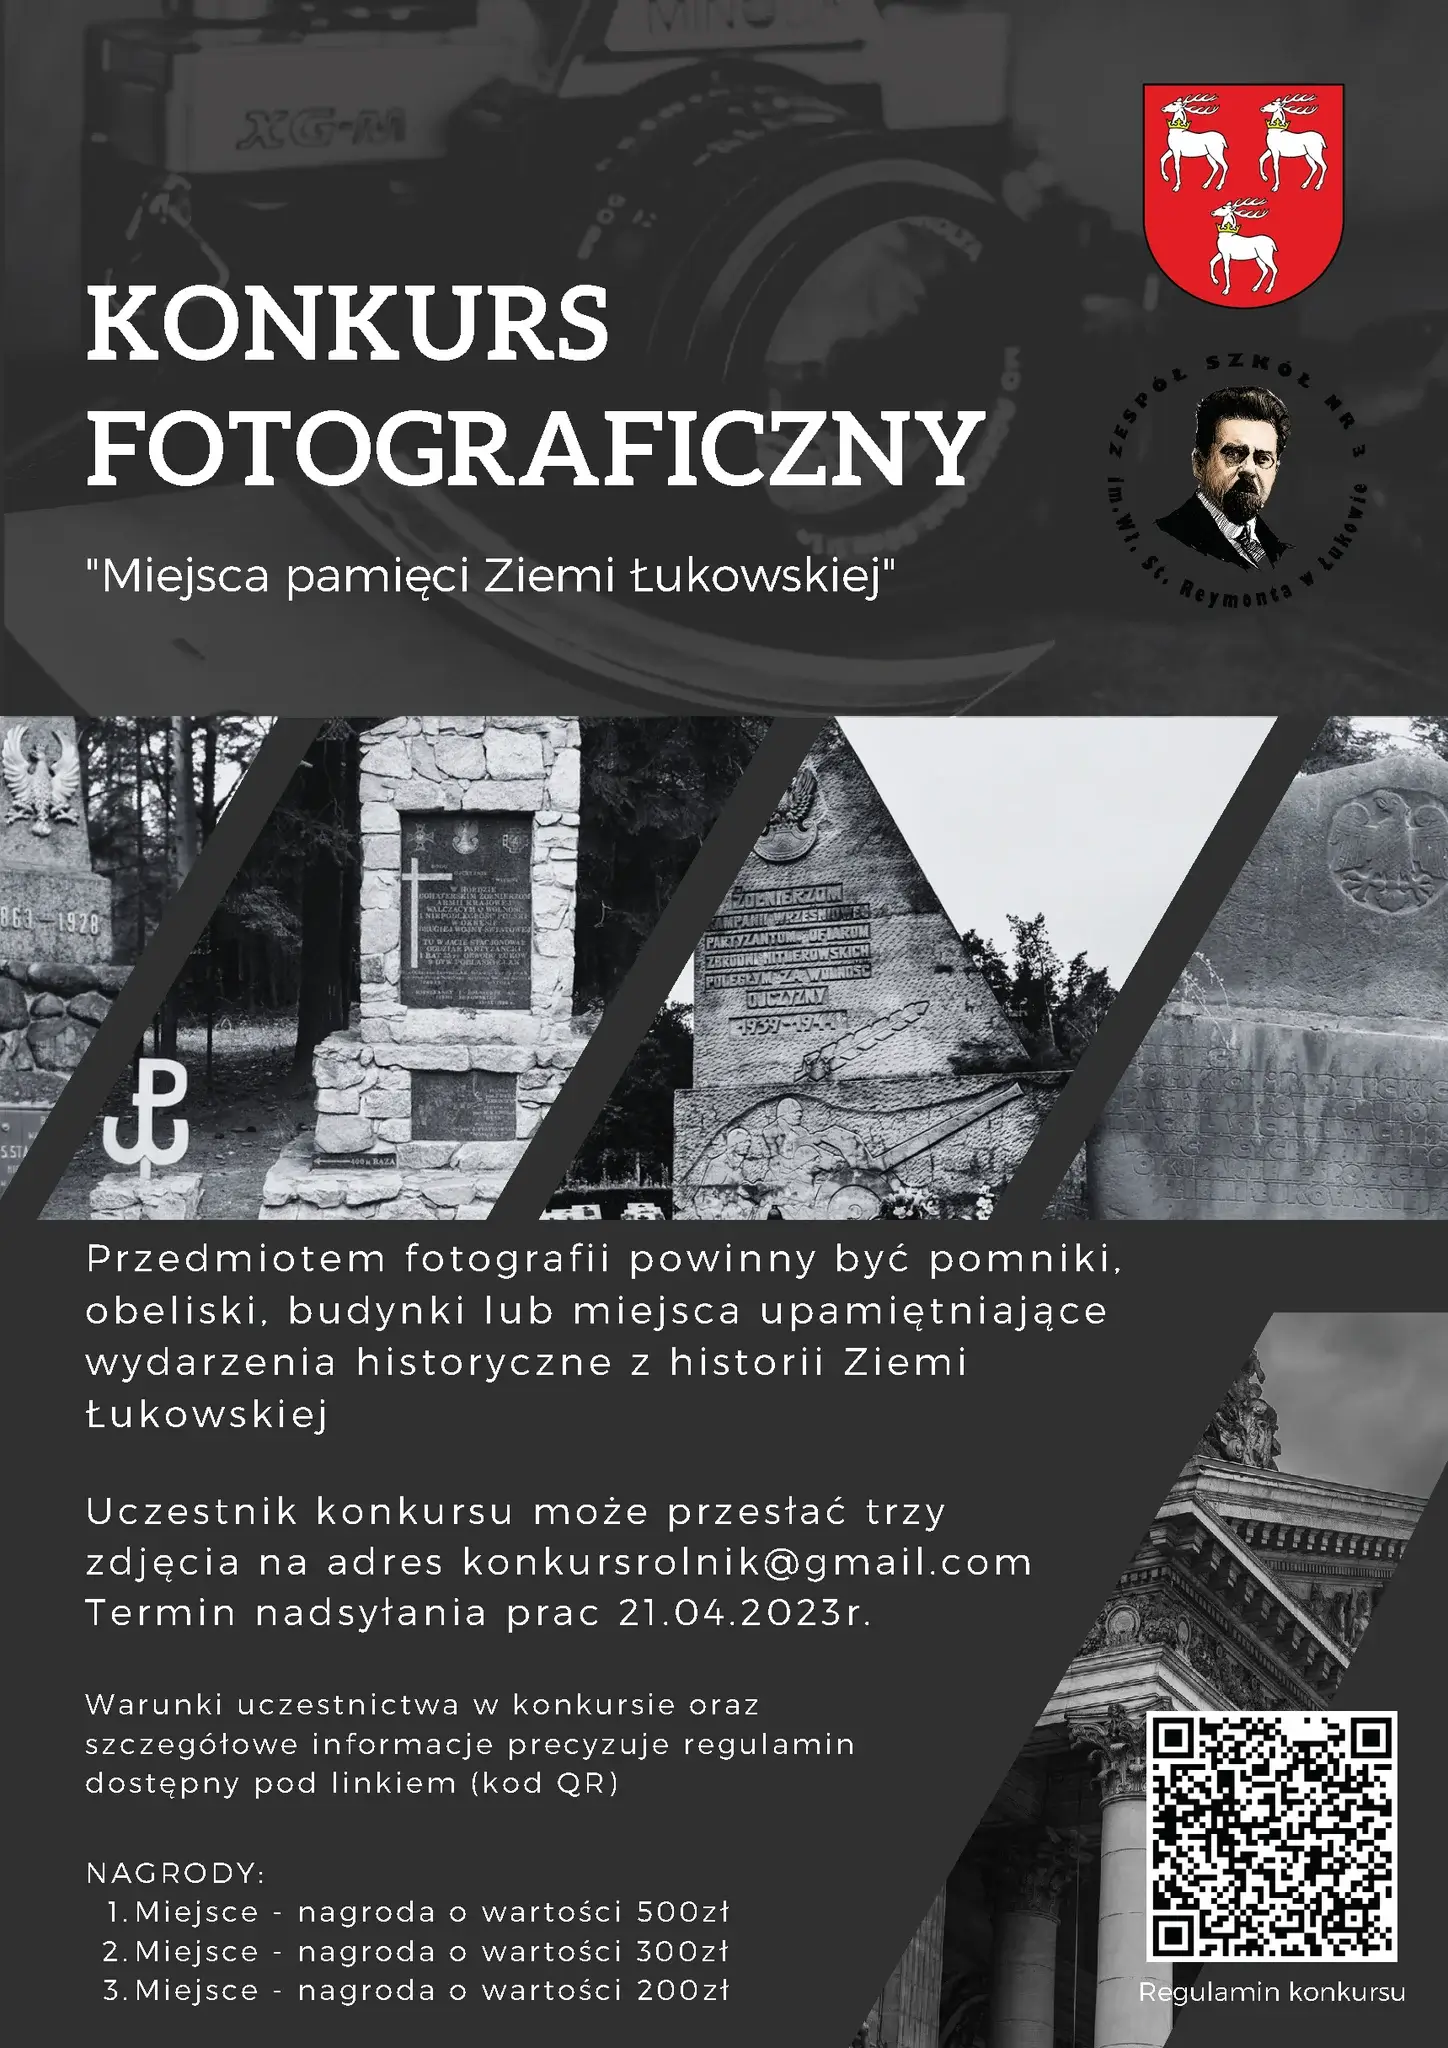 Konkurs fotograficzny „Miejsca pamięci Ziemi Łukowskiej".